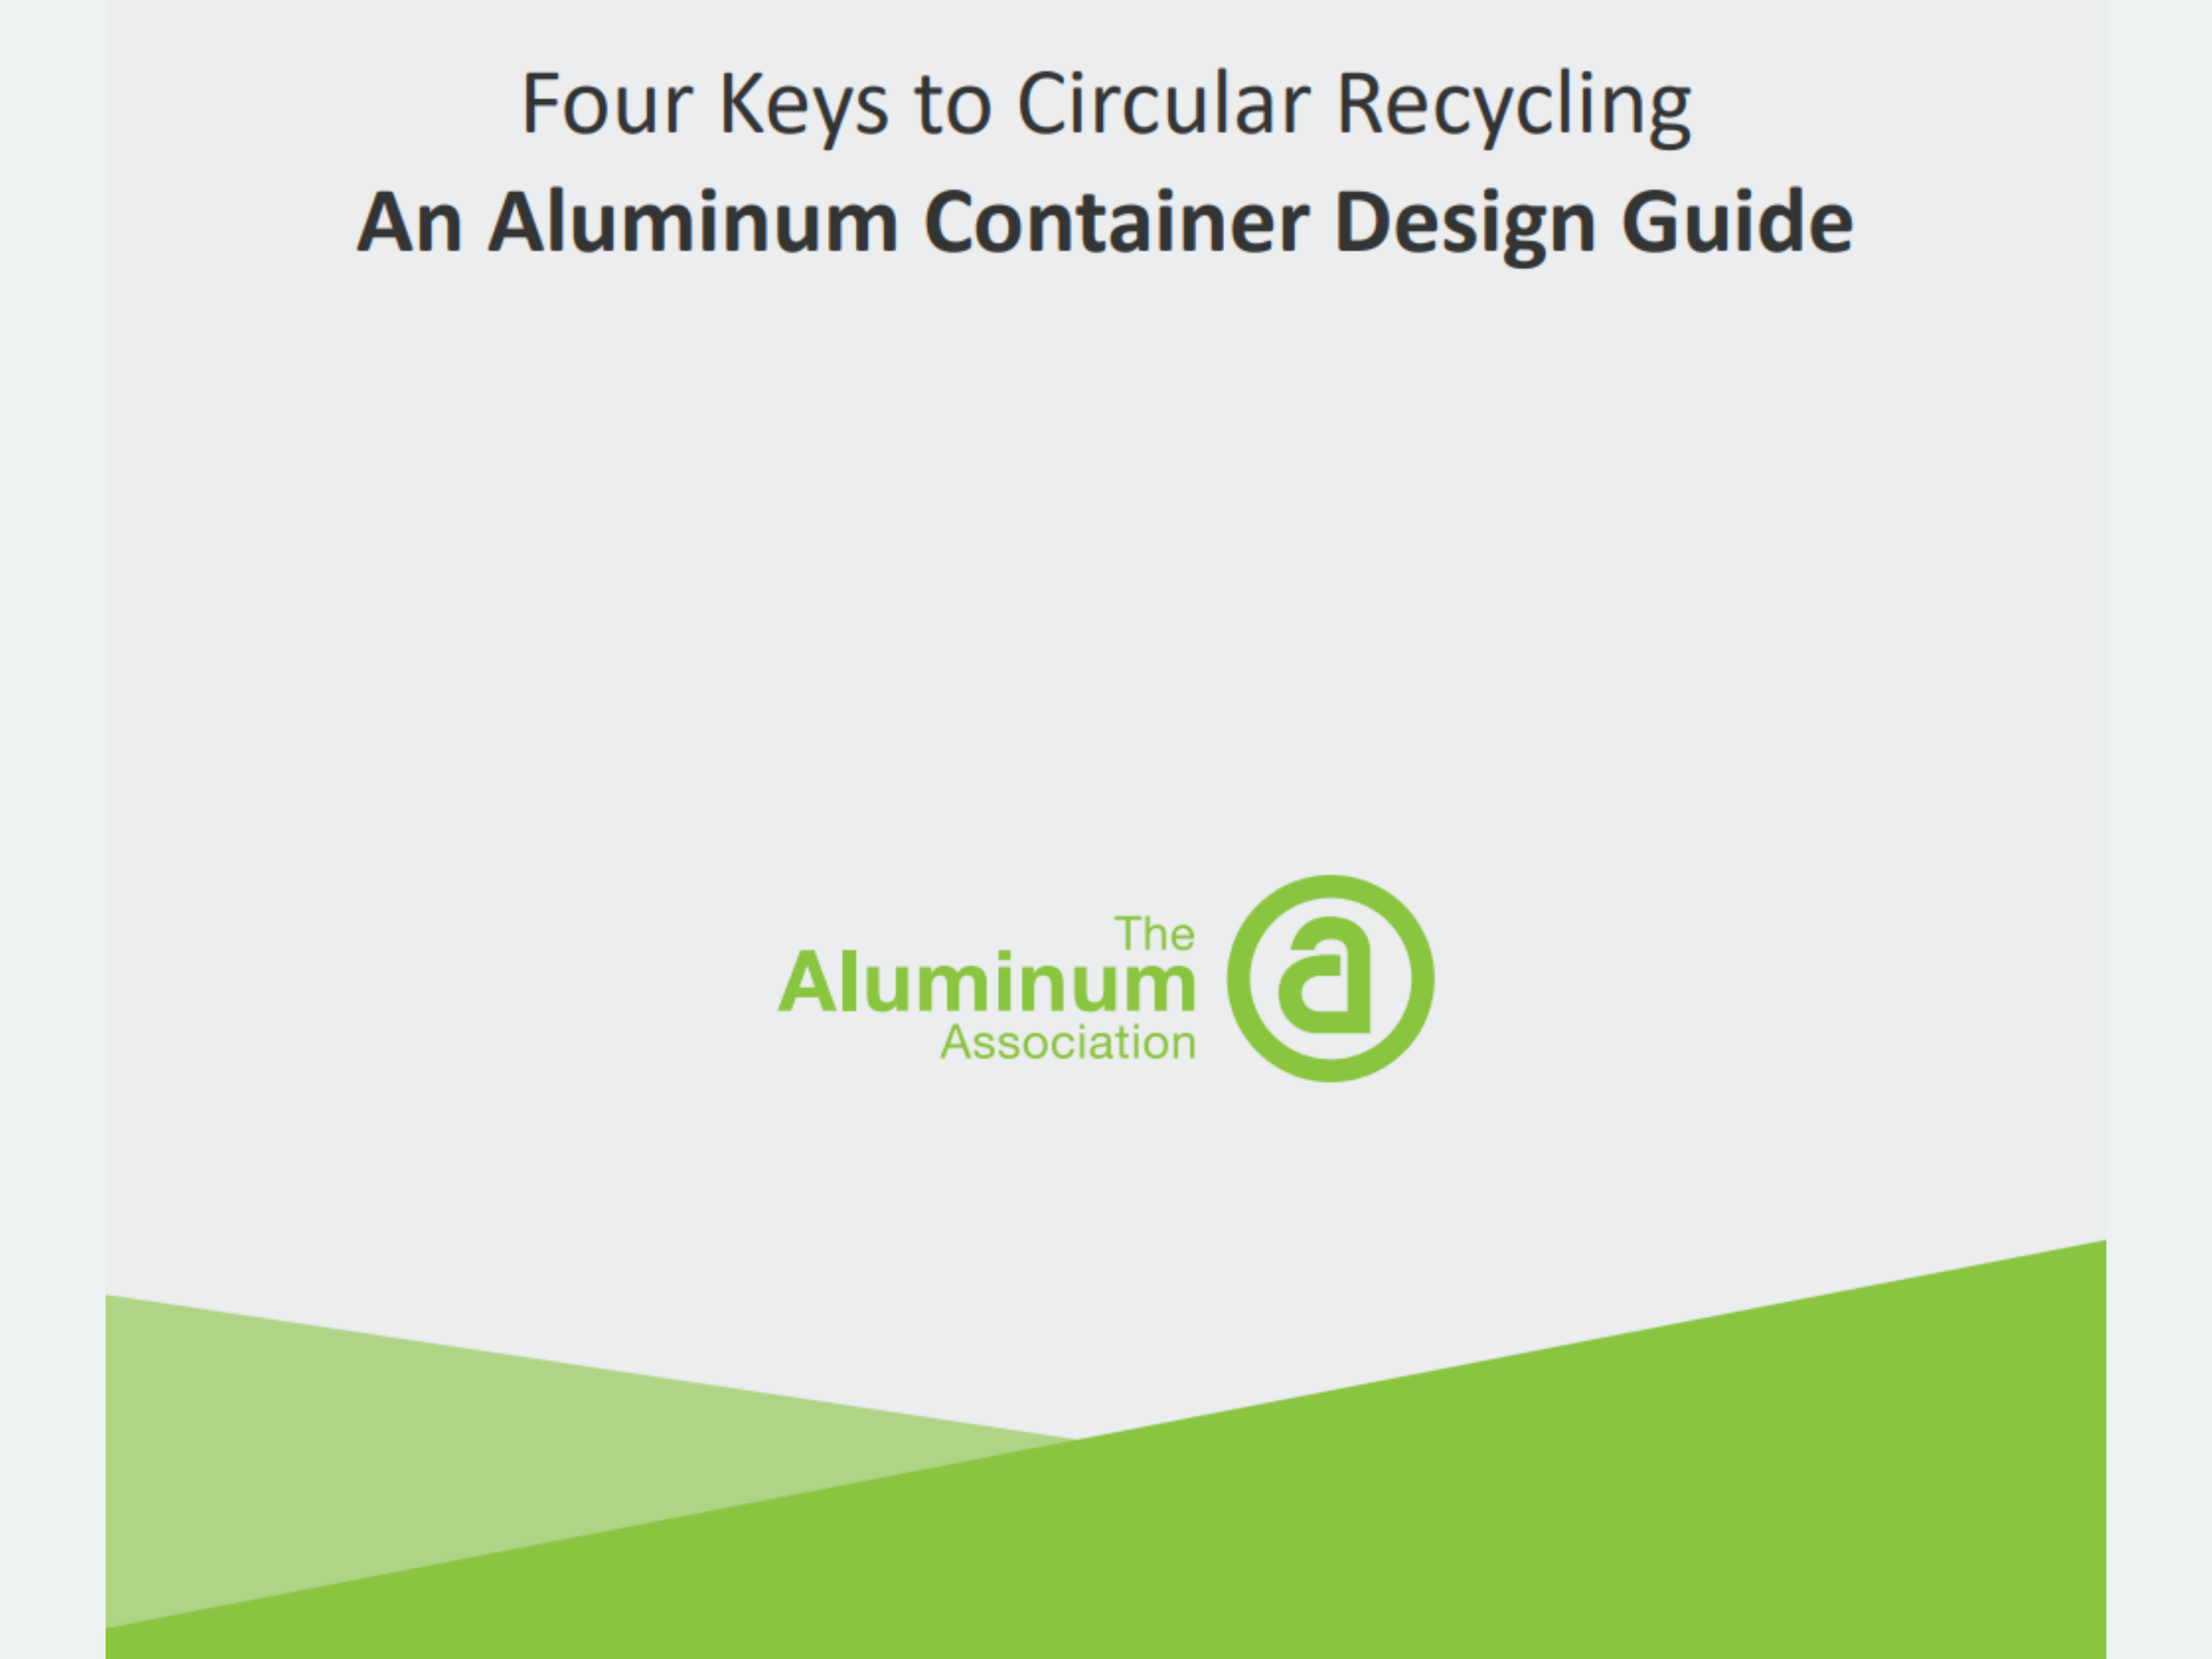 Aluminum container design guide cover